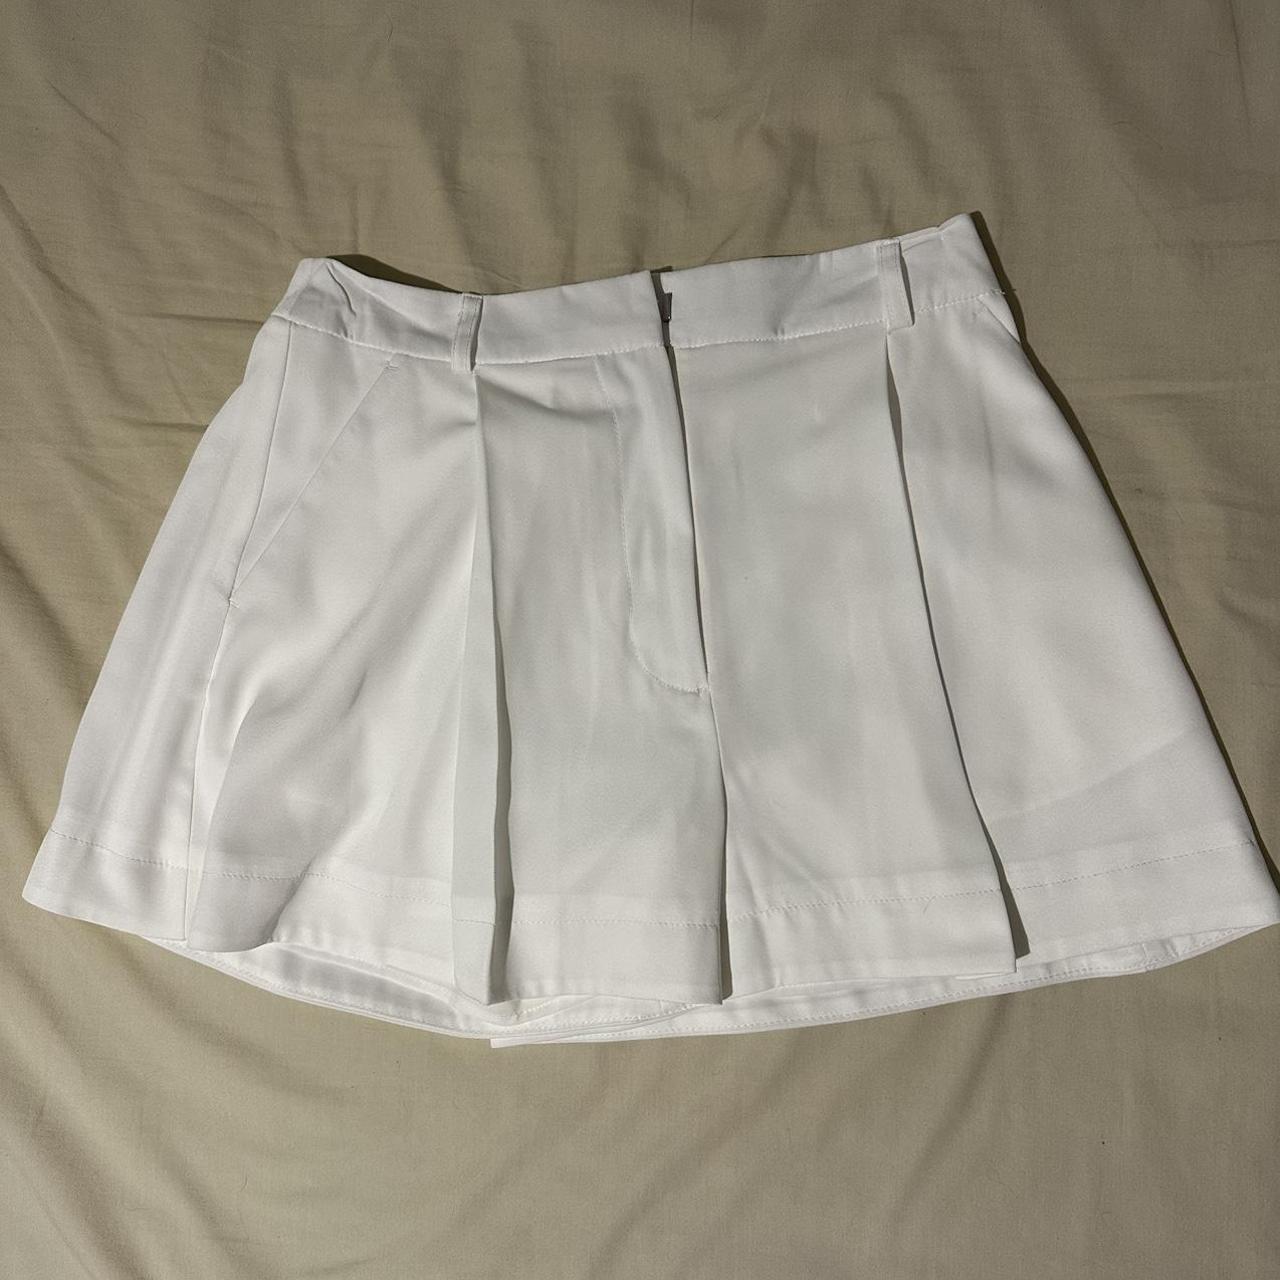 Glasson White Shorts/ Skort Lightweight... - Depop